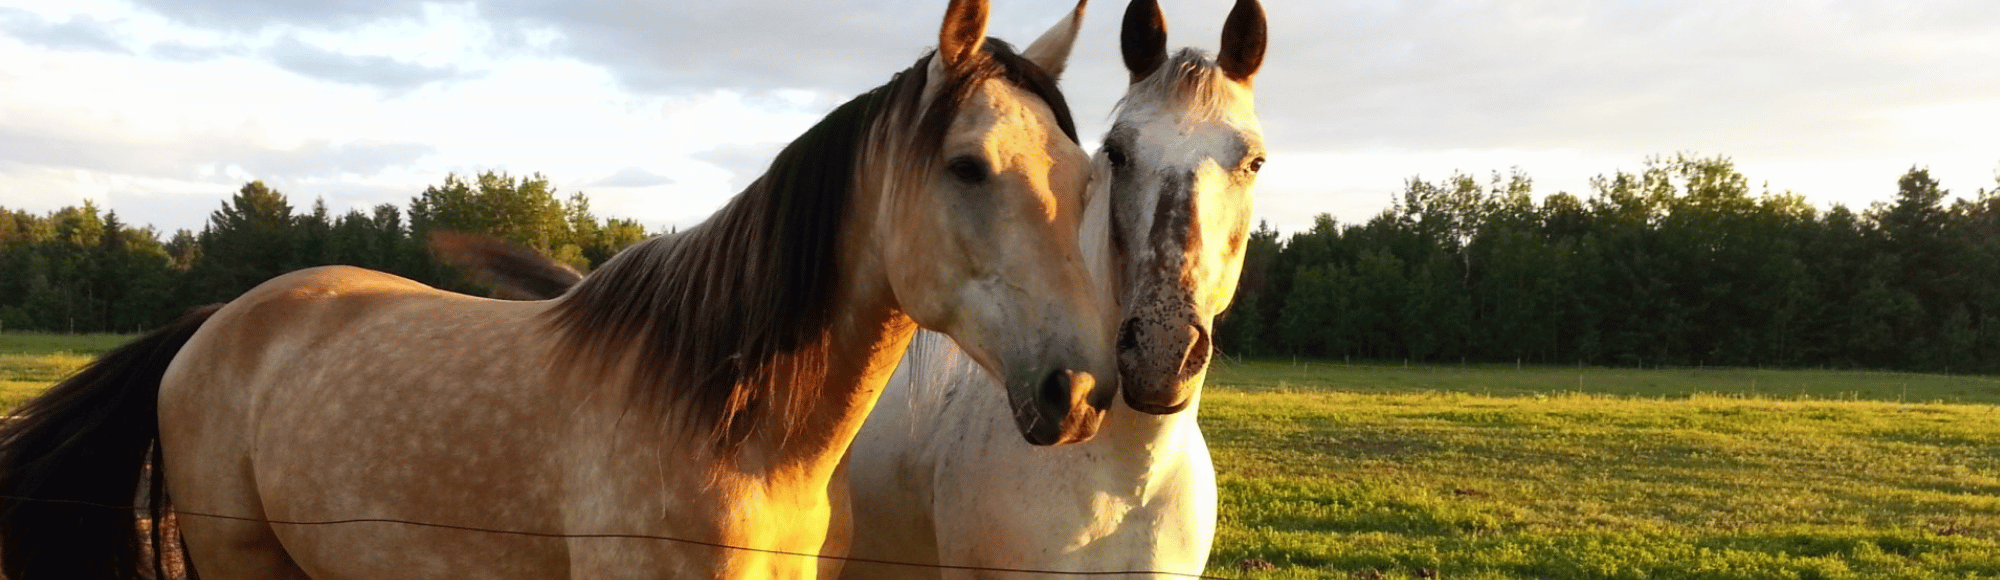 Zwei Pferde stehen auf der Weide